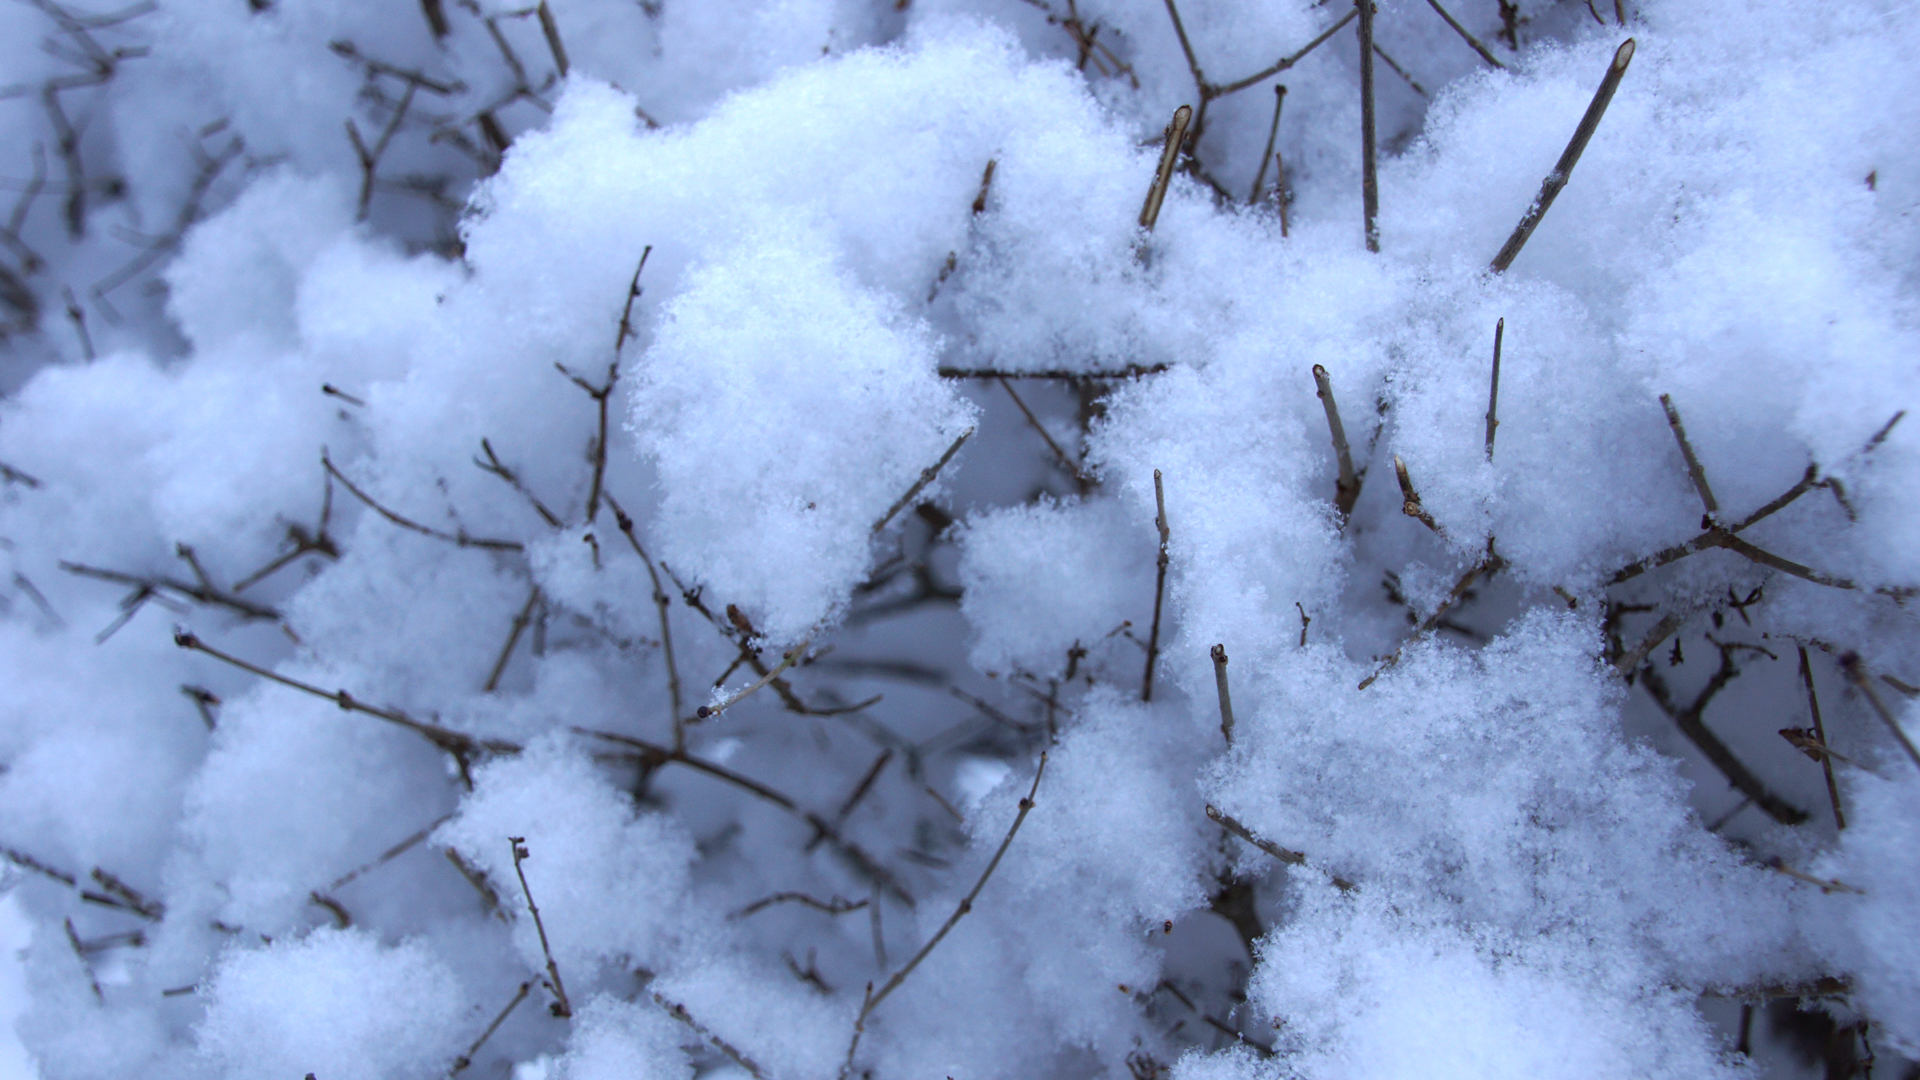 Fotostrecke Schnee Abbildung 02: Flauschiger Schnee